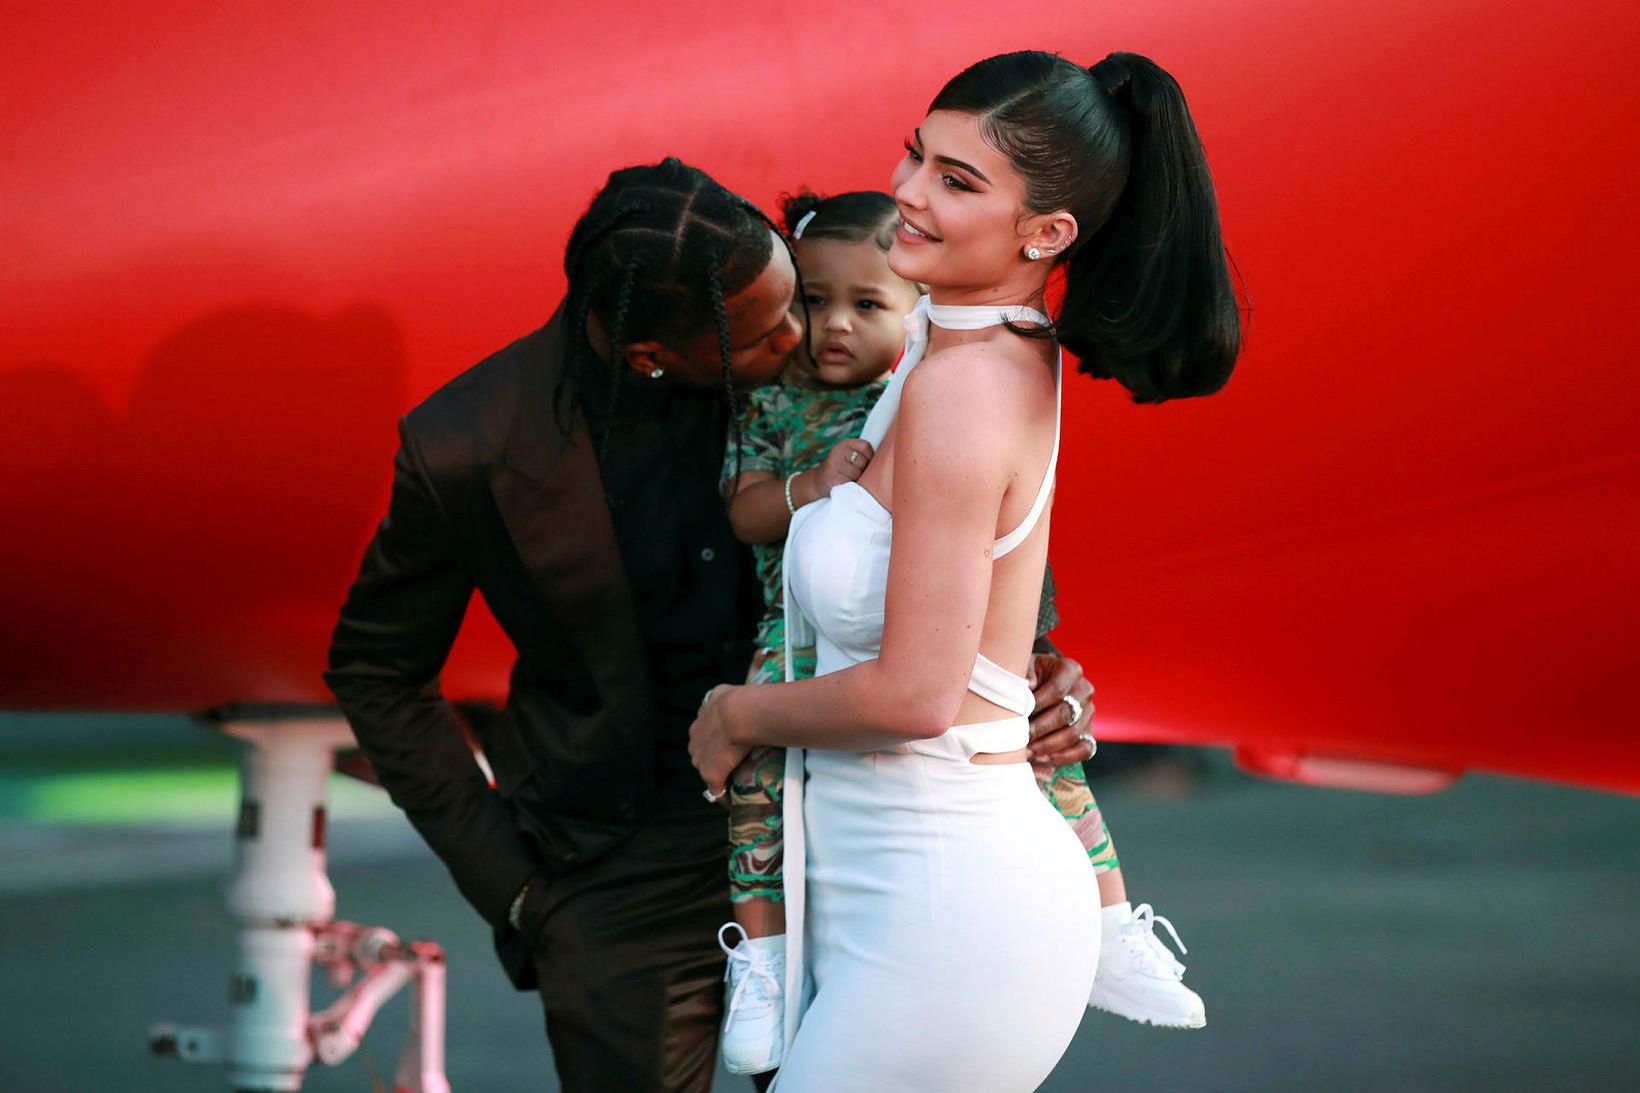 Kylie Jenner ásamt barnsföður sínum, Travis Scott, og dóttur þeirra …